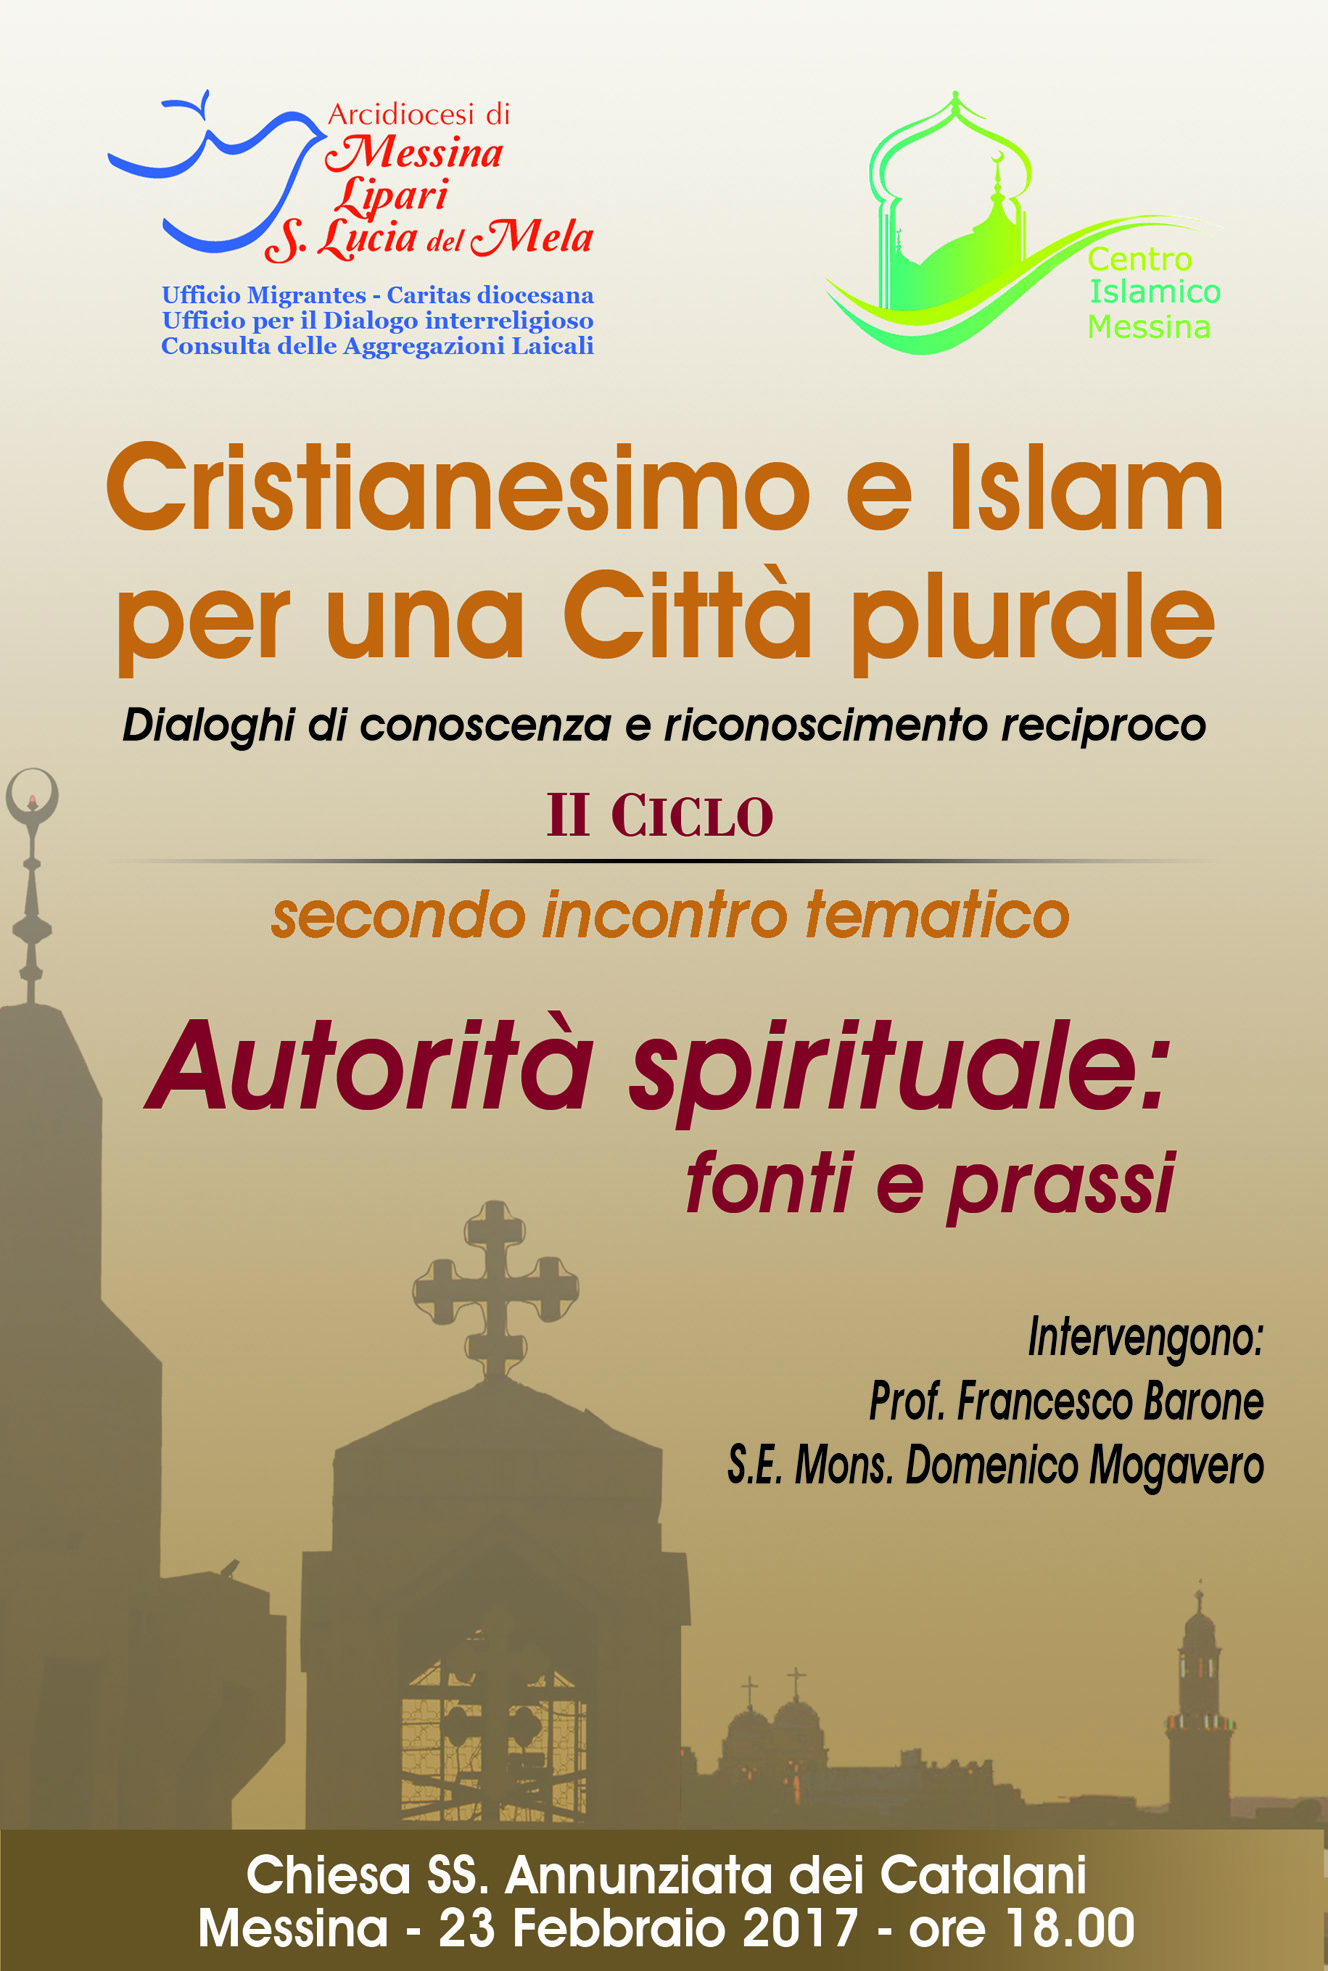 Messina. Cristianesimo e Islam per una Città plurale, dialoghi di conoscenza e riconoscimento reciproco